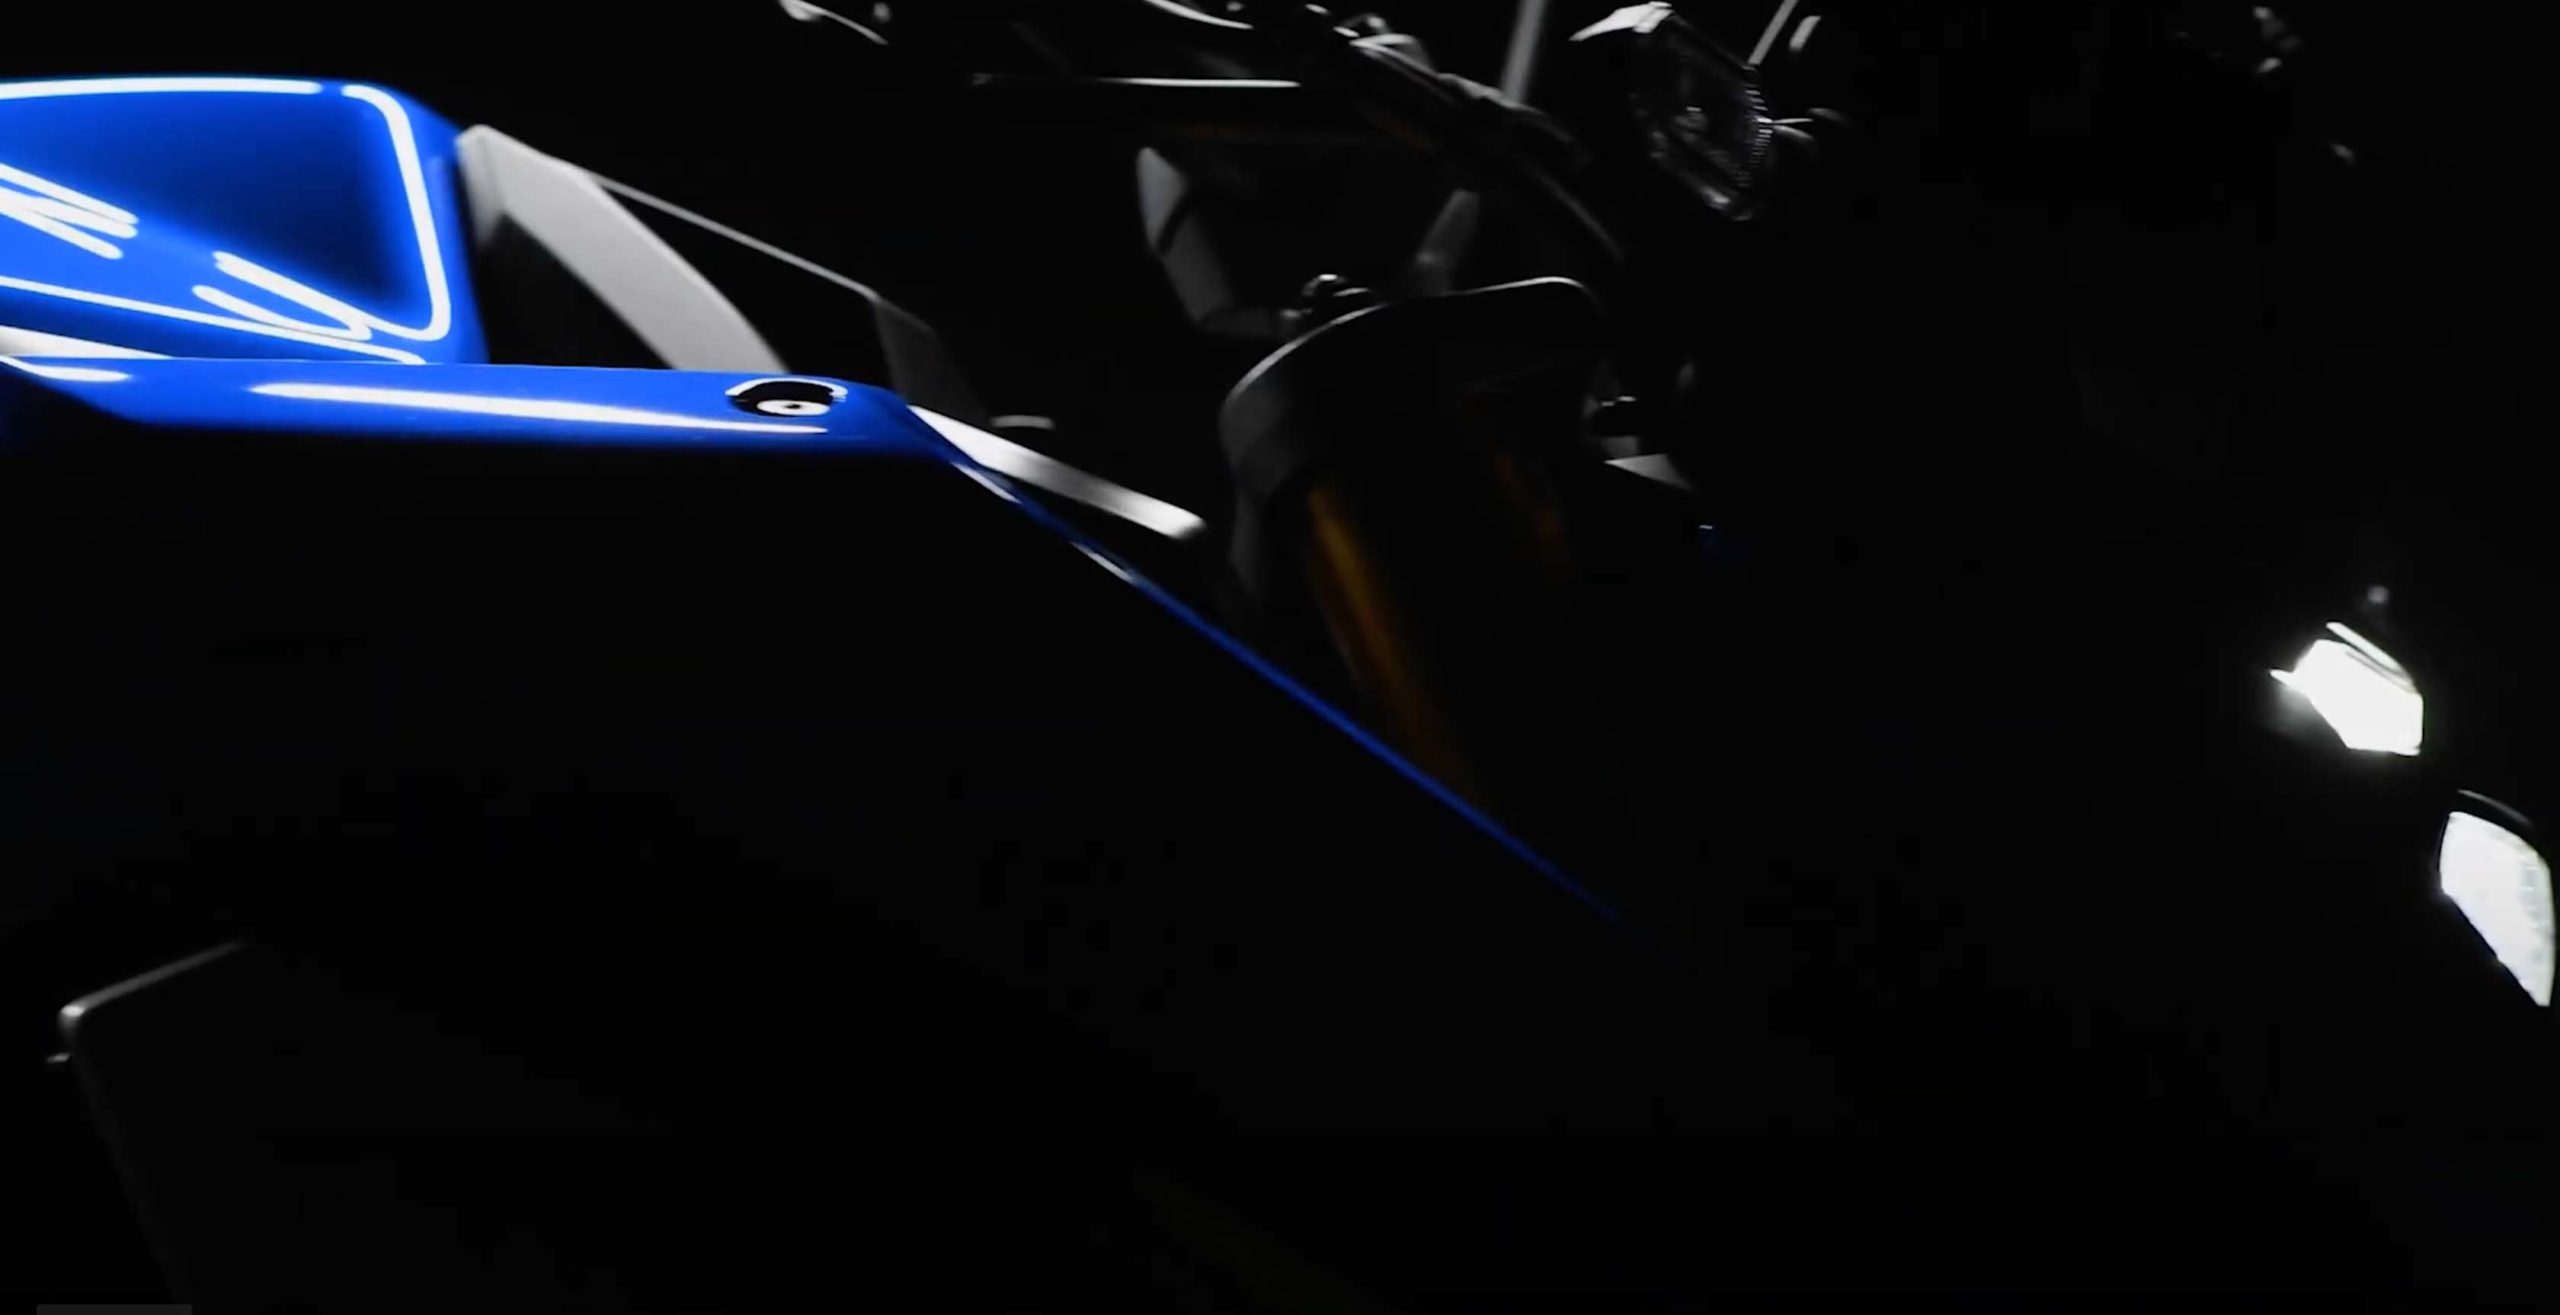 2022 Suzuki GSX S1000 teaser 08 scaled